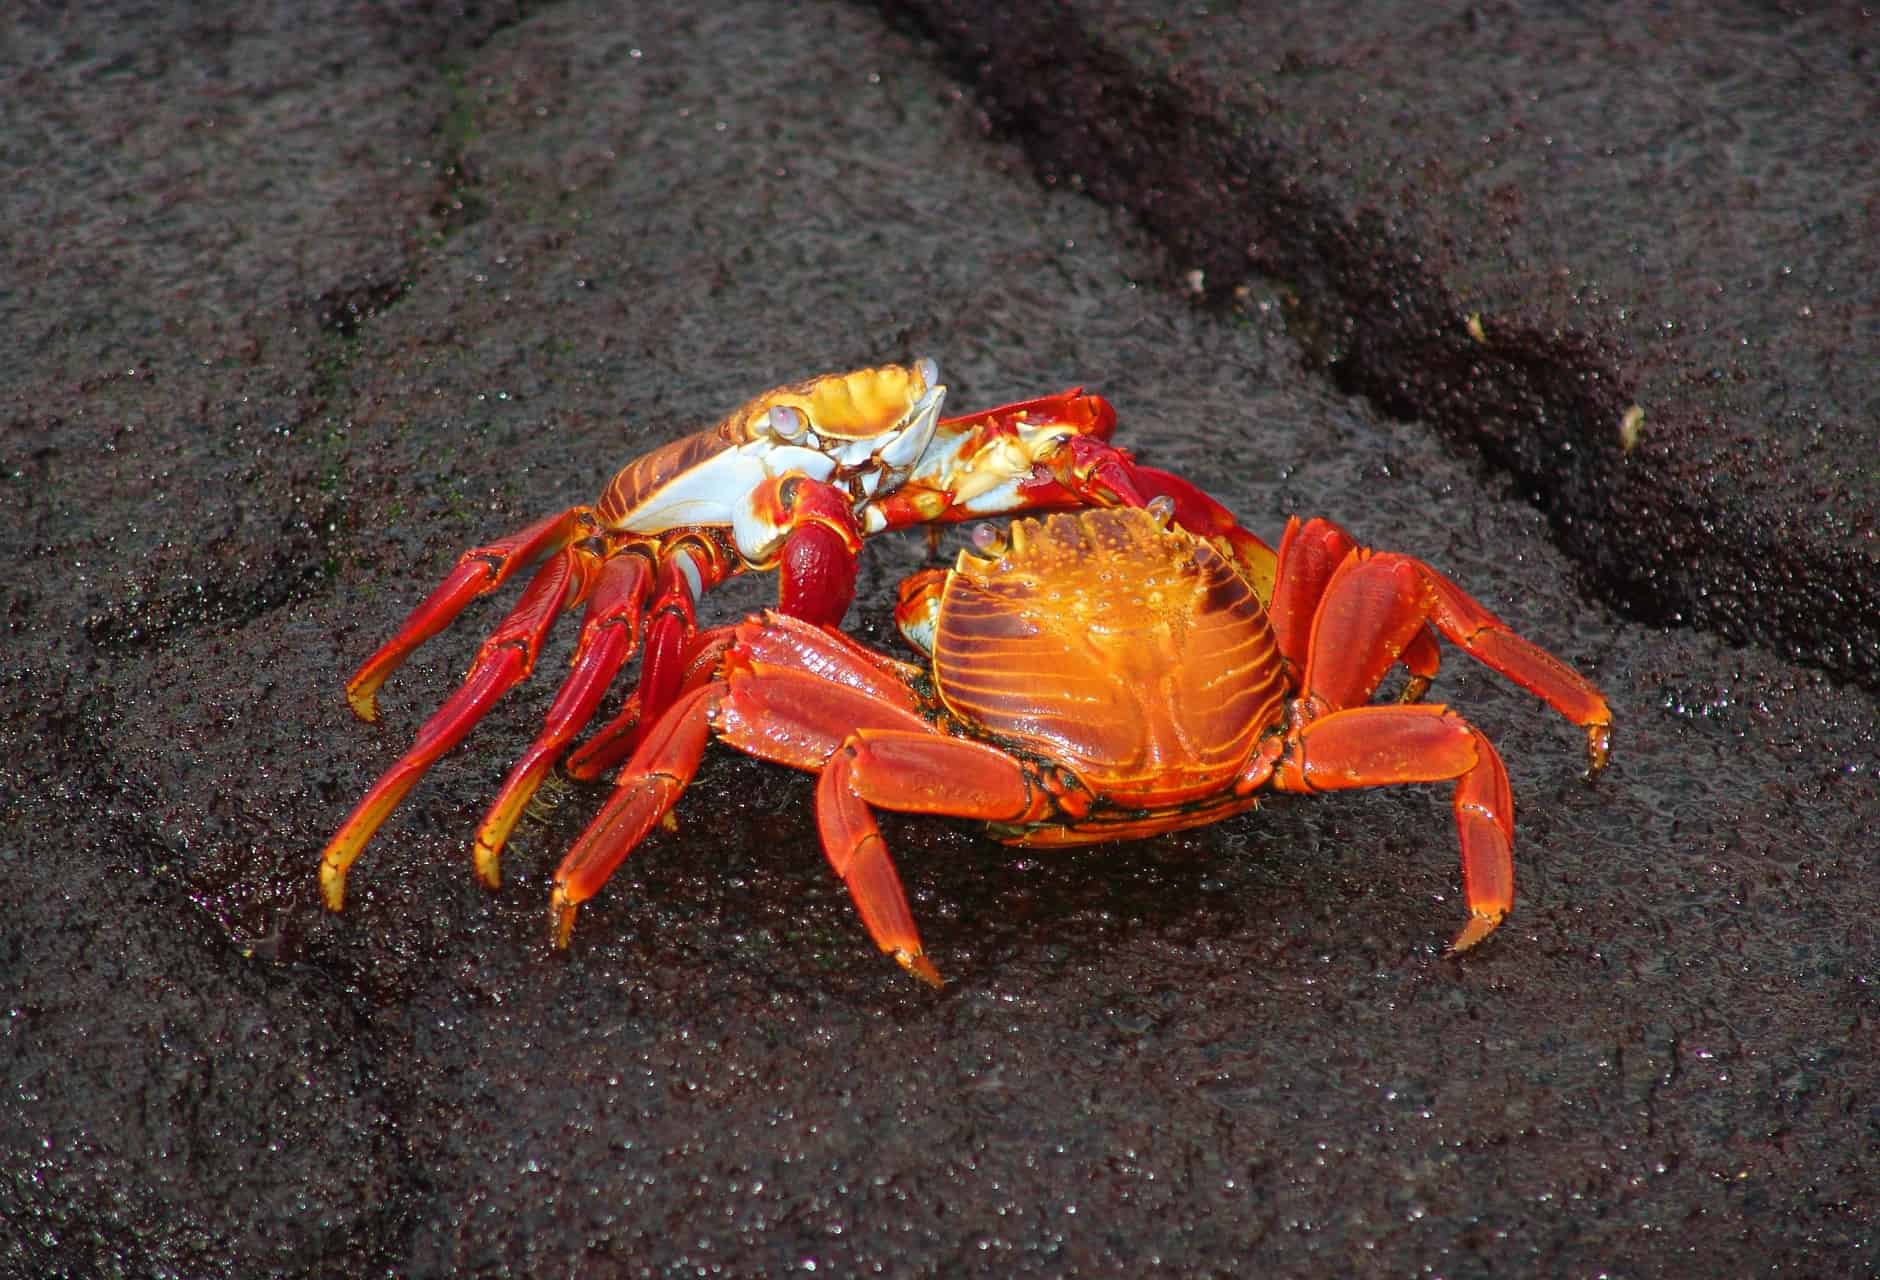 Vertrouwen Wat wil je echt zeggen Rode krab - Foto van Jim Strasma